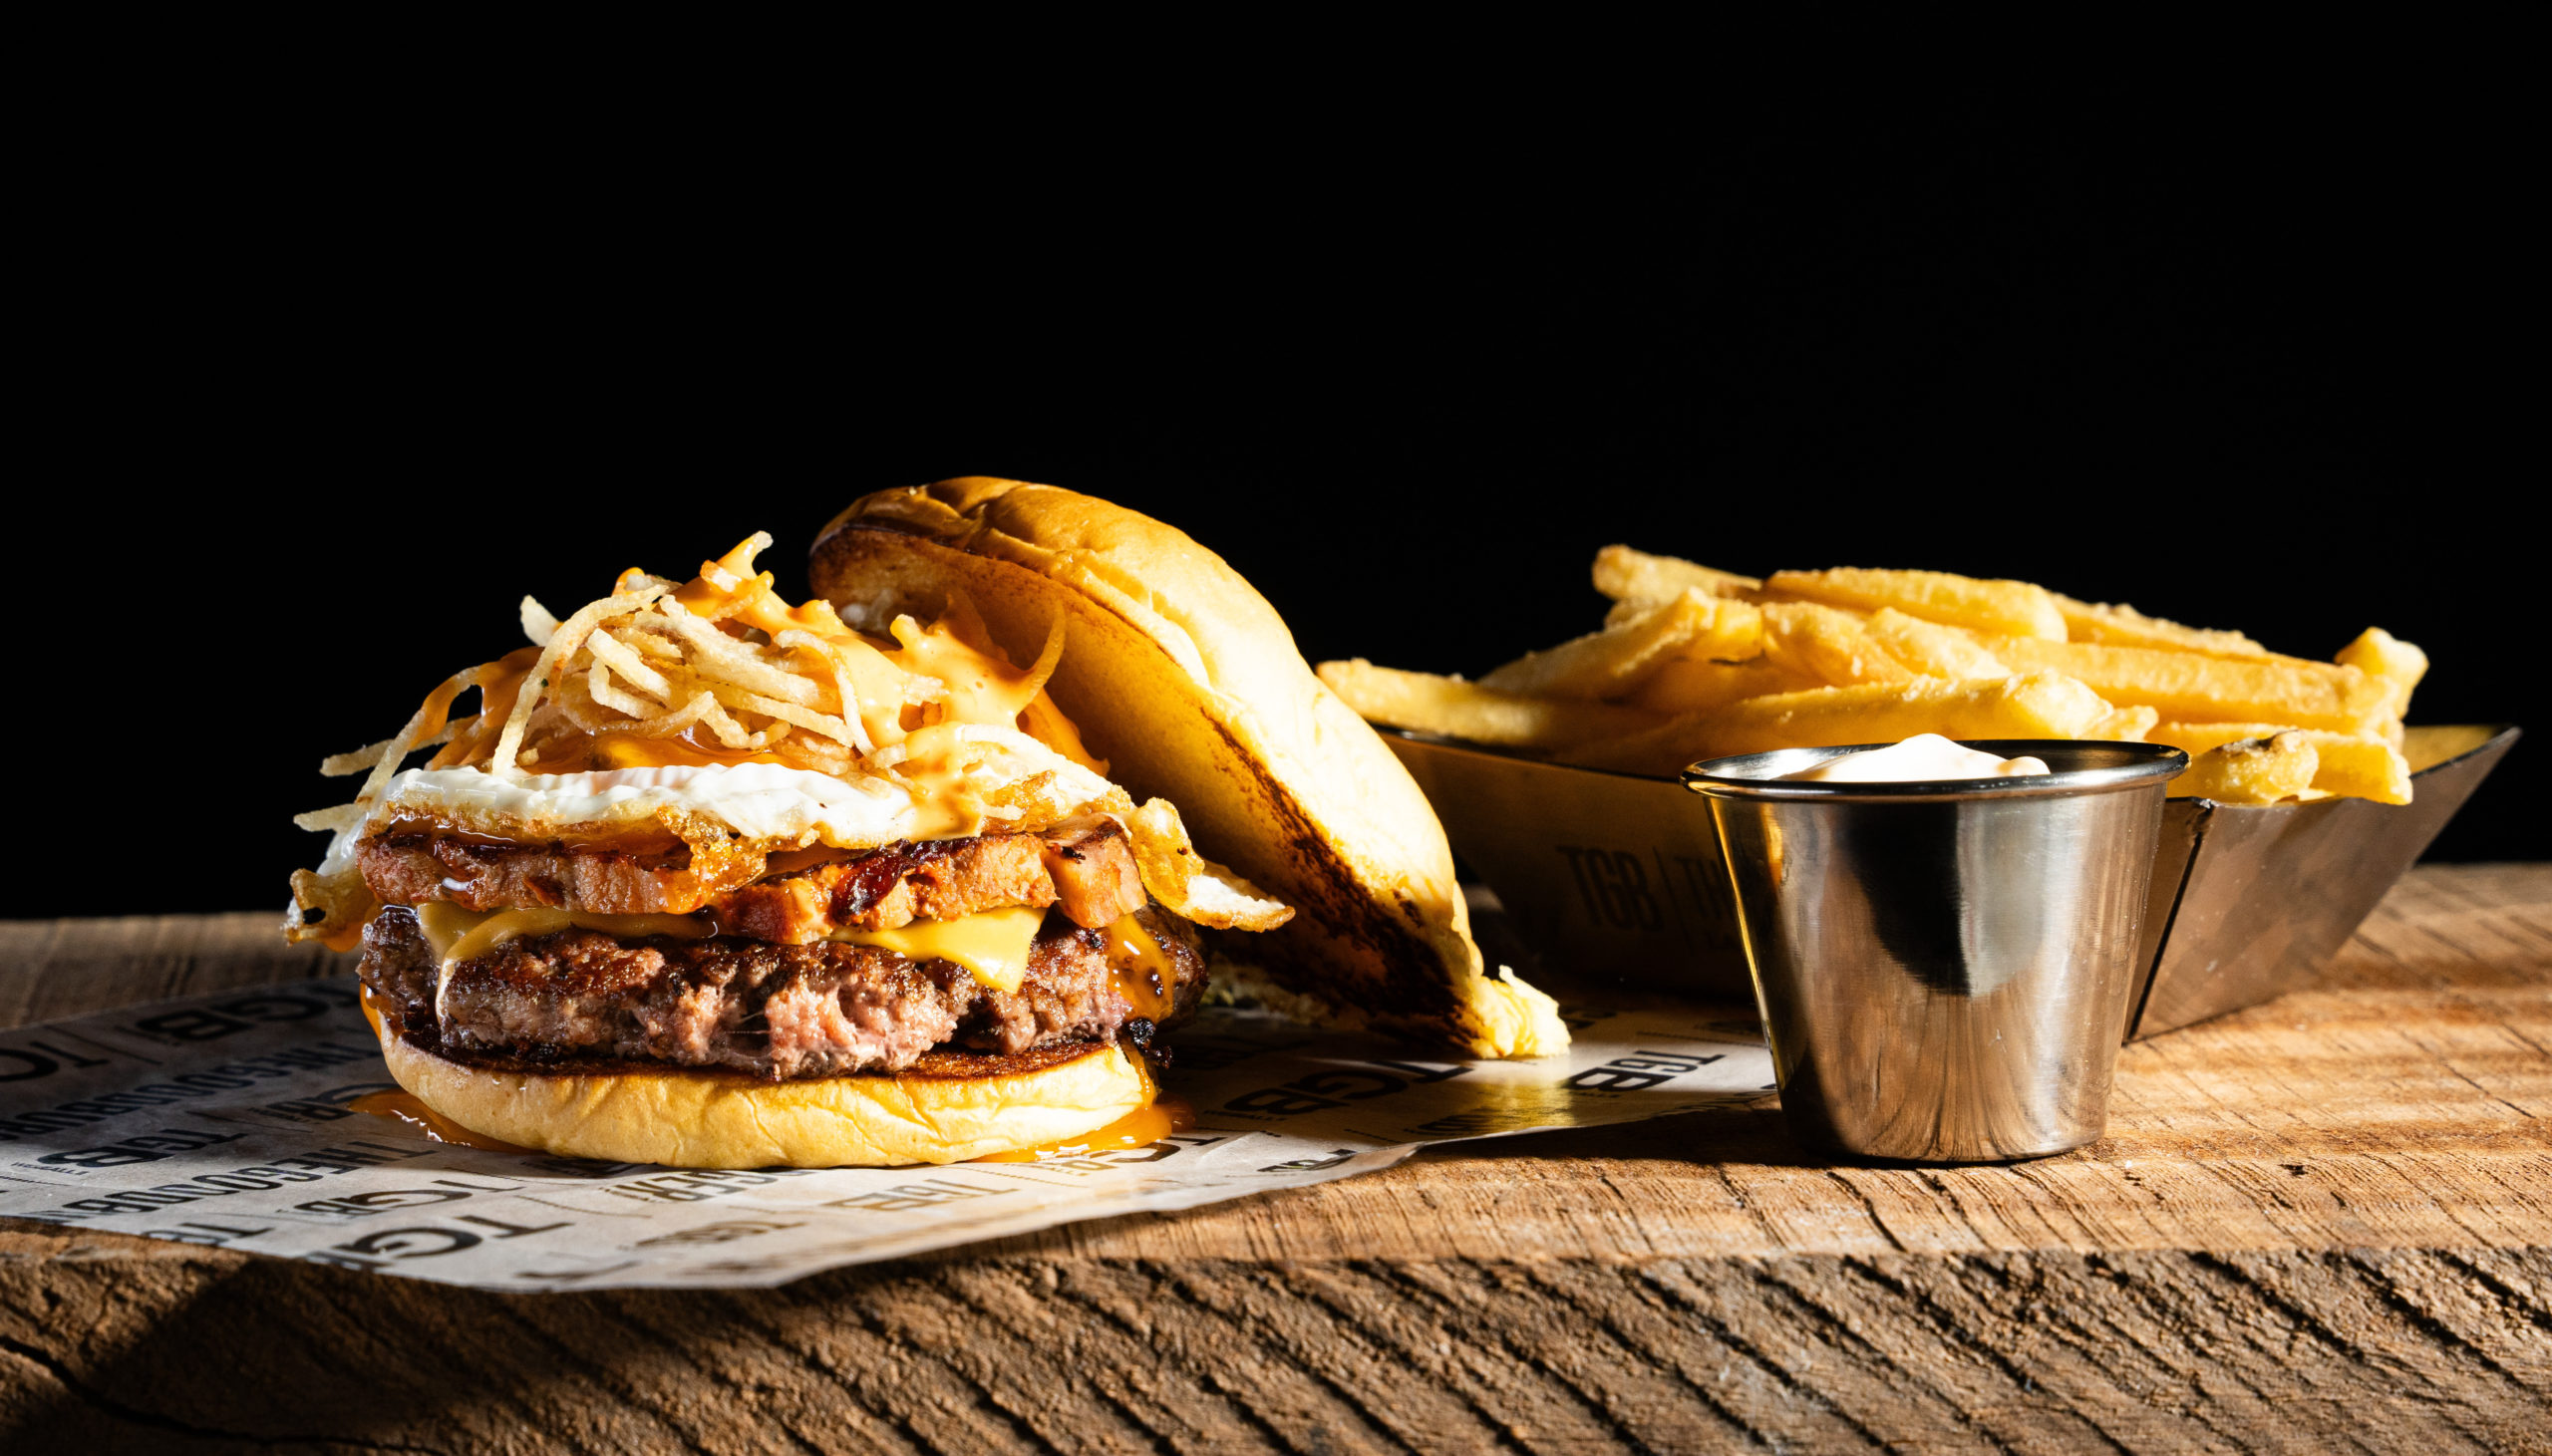 The Good Burger lanza dos burgers premium edición limitada